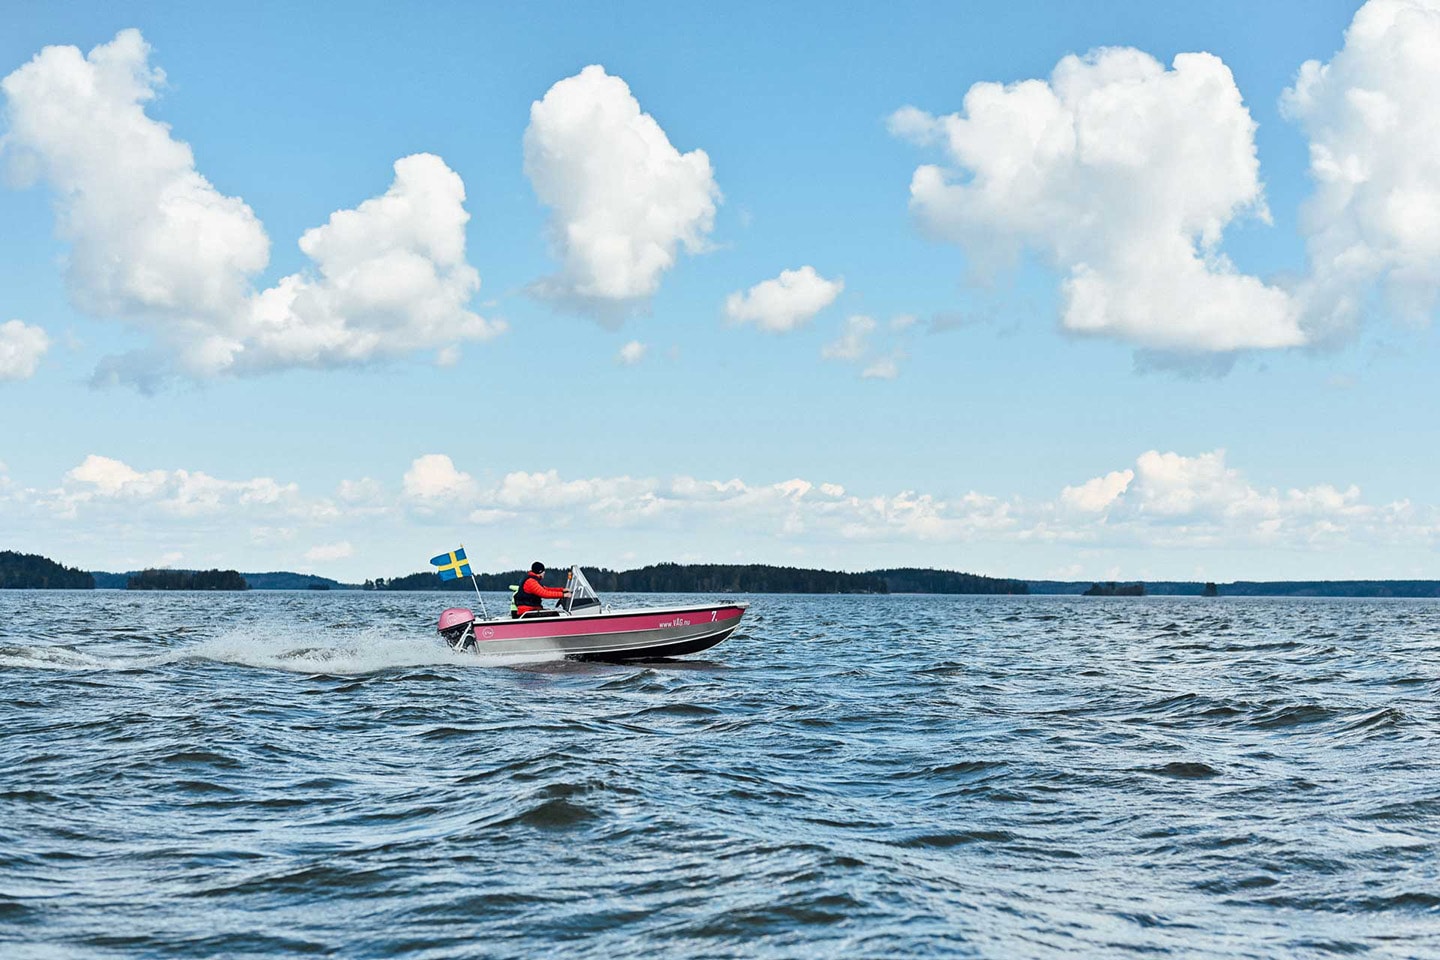 Hyr en båt med Take A Wave - Få 400 kr att nyttja på din första resa! (1 av 5)